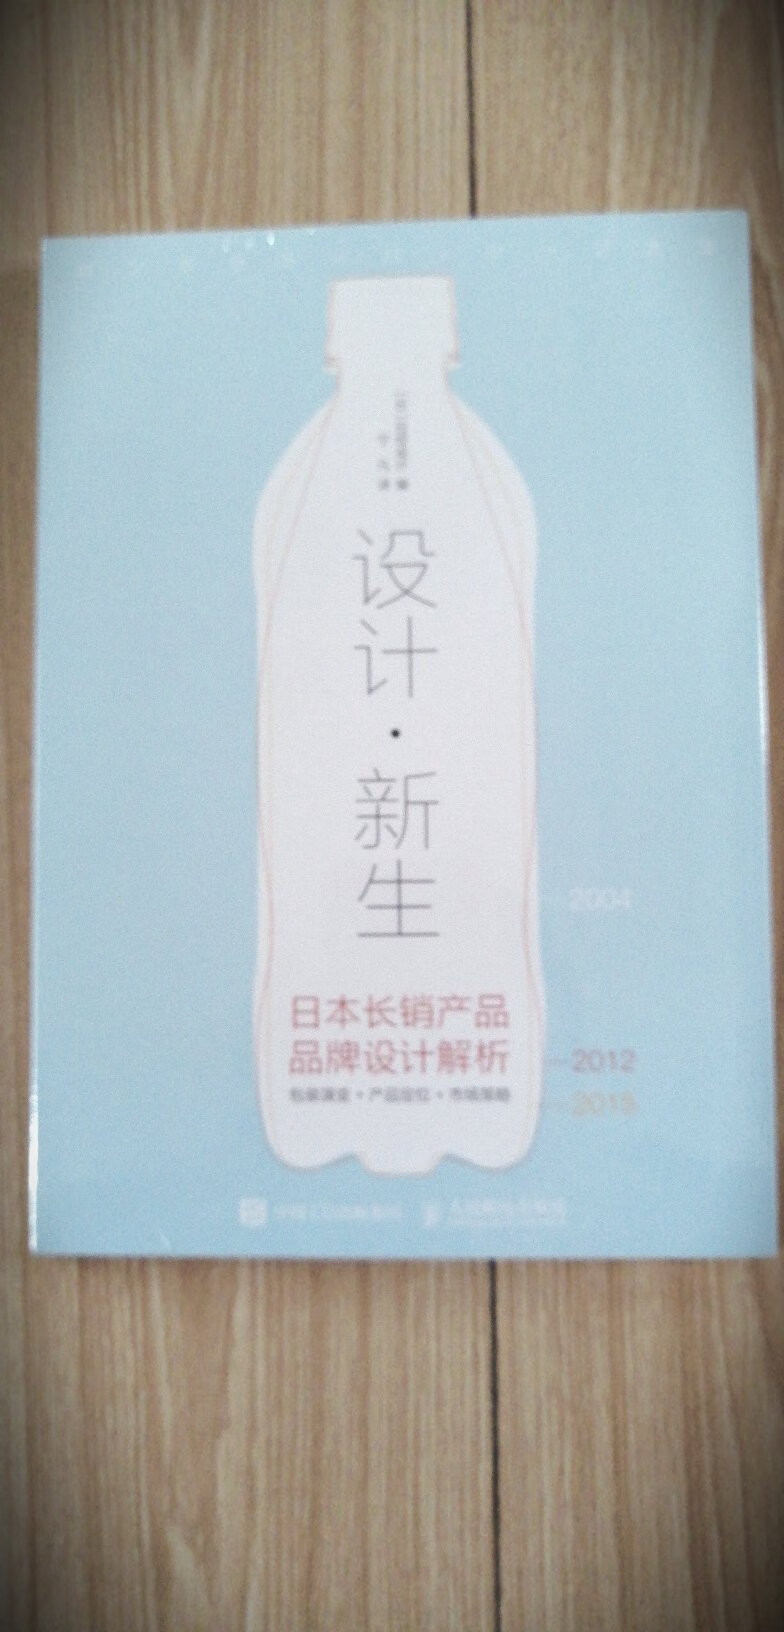 又一本日本设计的书籍，作为设计师，我应该算比较好学的了吧